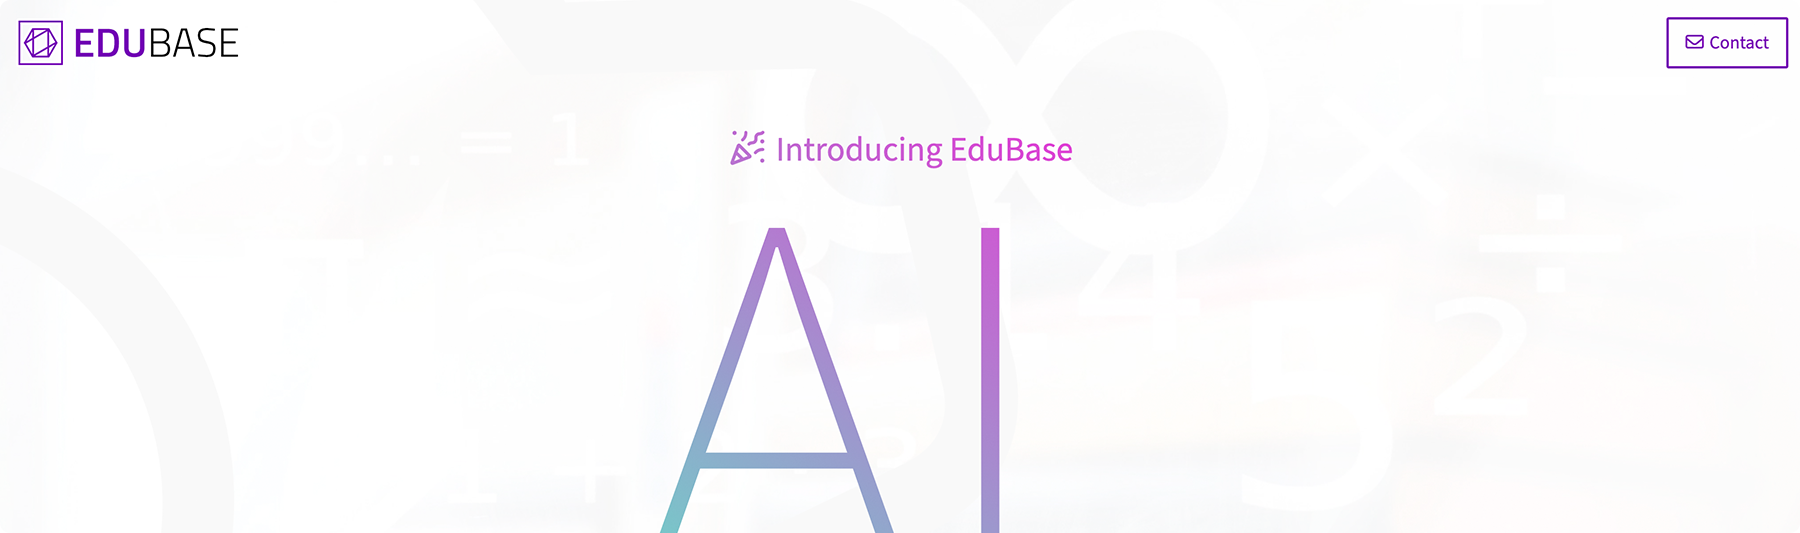 Open EduBase Assistant page